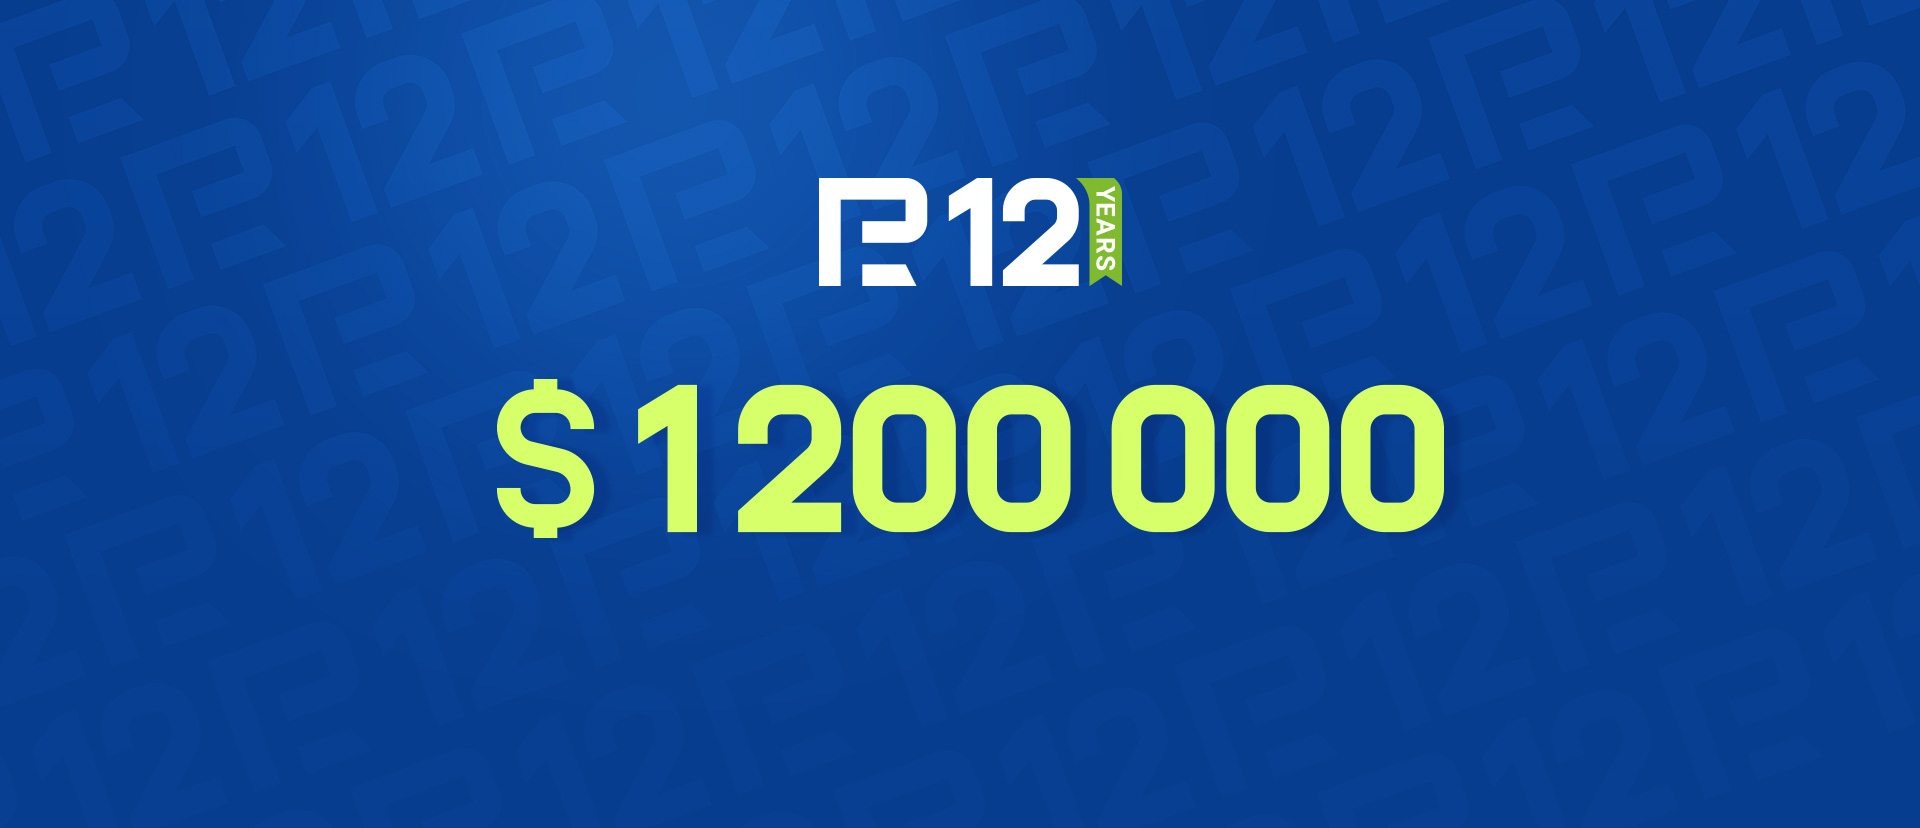 Kampaania 1,200,000 XNUMX XNUMX dollari suuruse auhinnafondiga RoboForexilt. Osale ja võida!